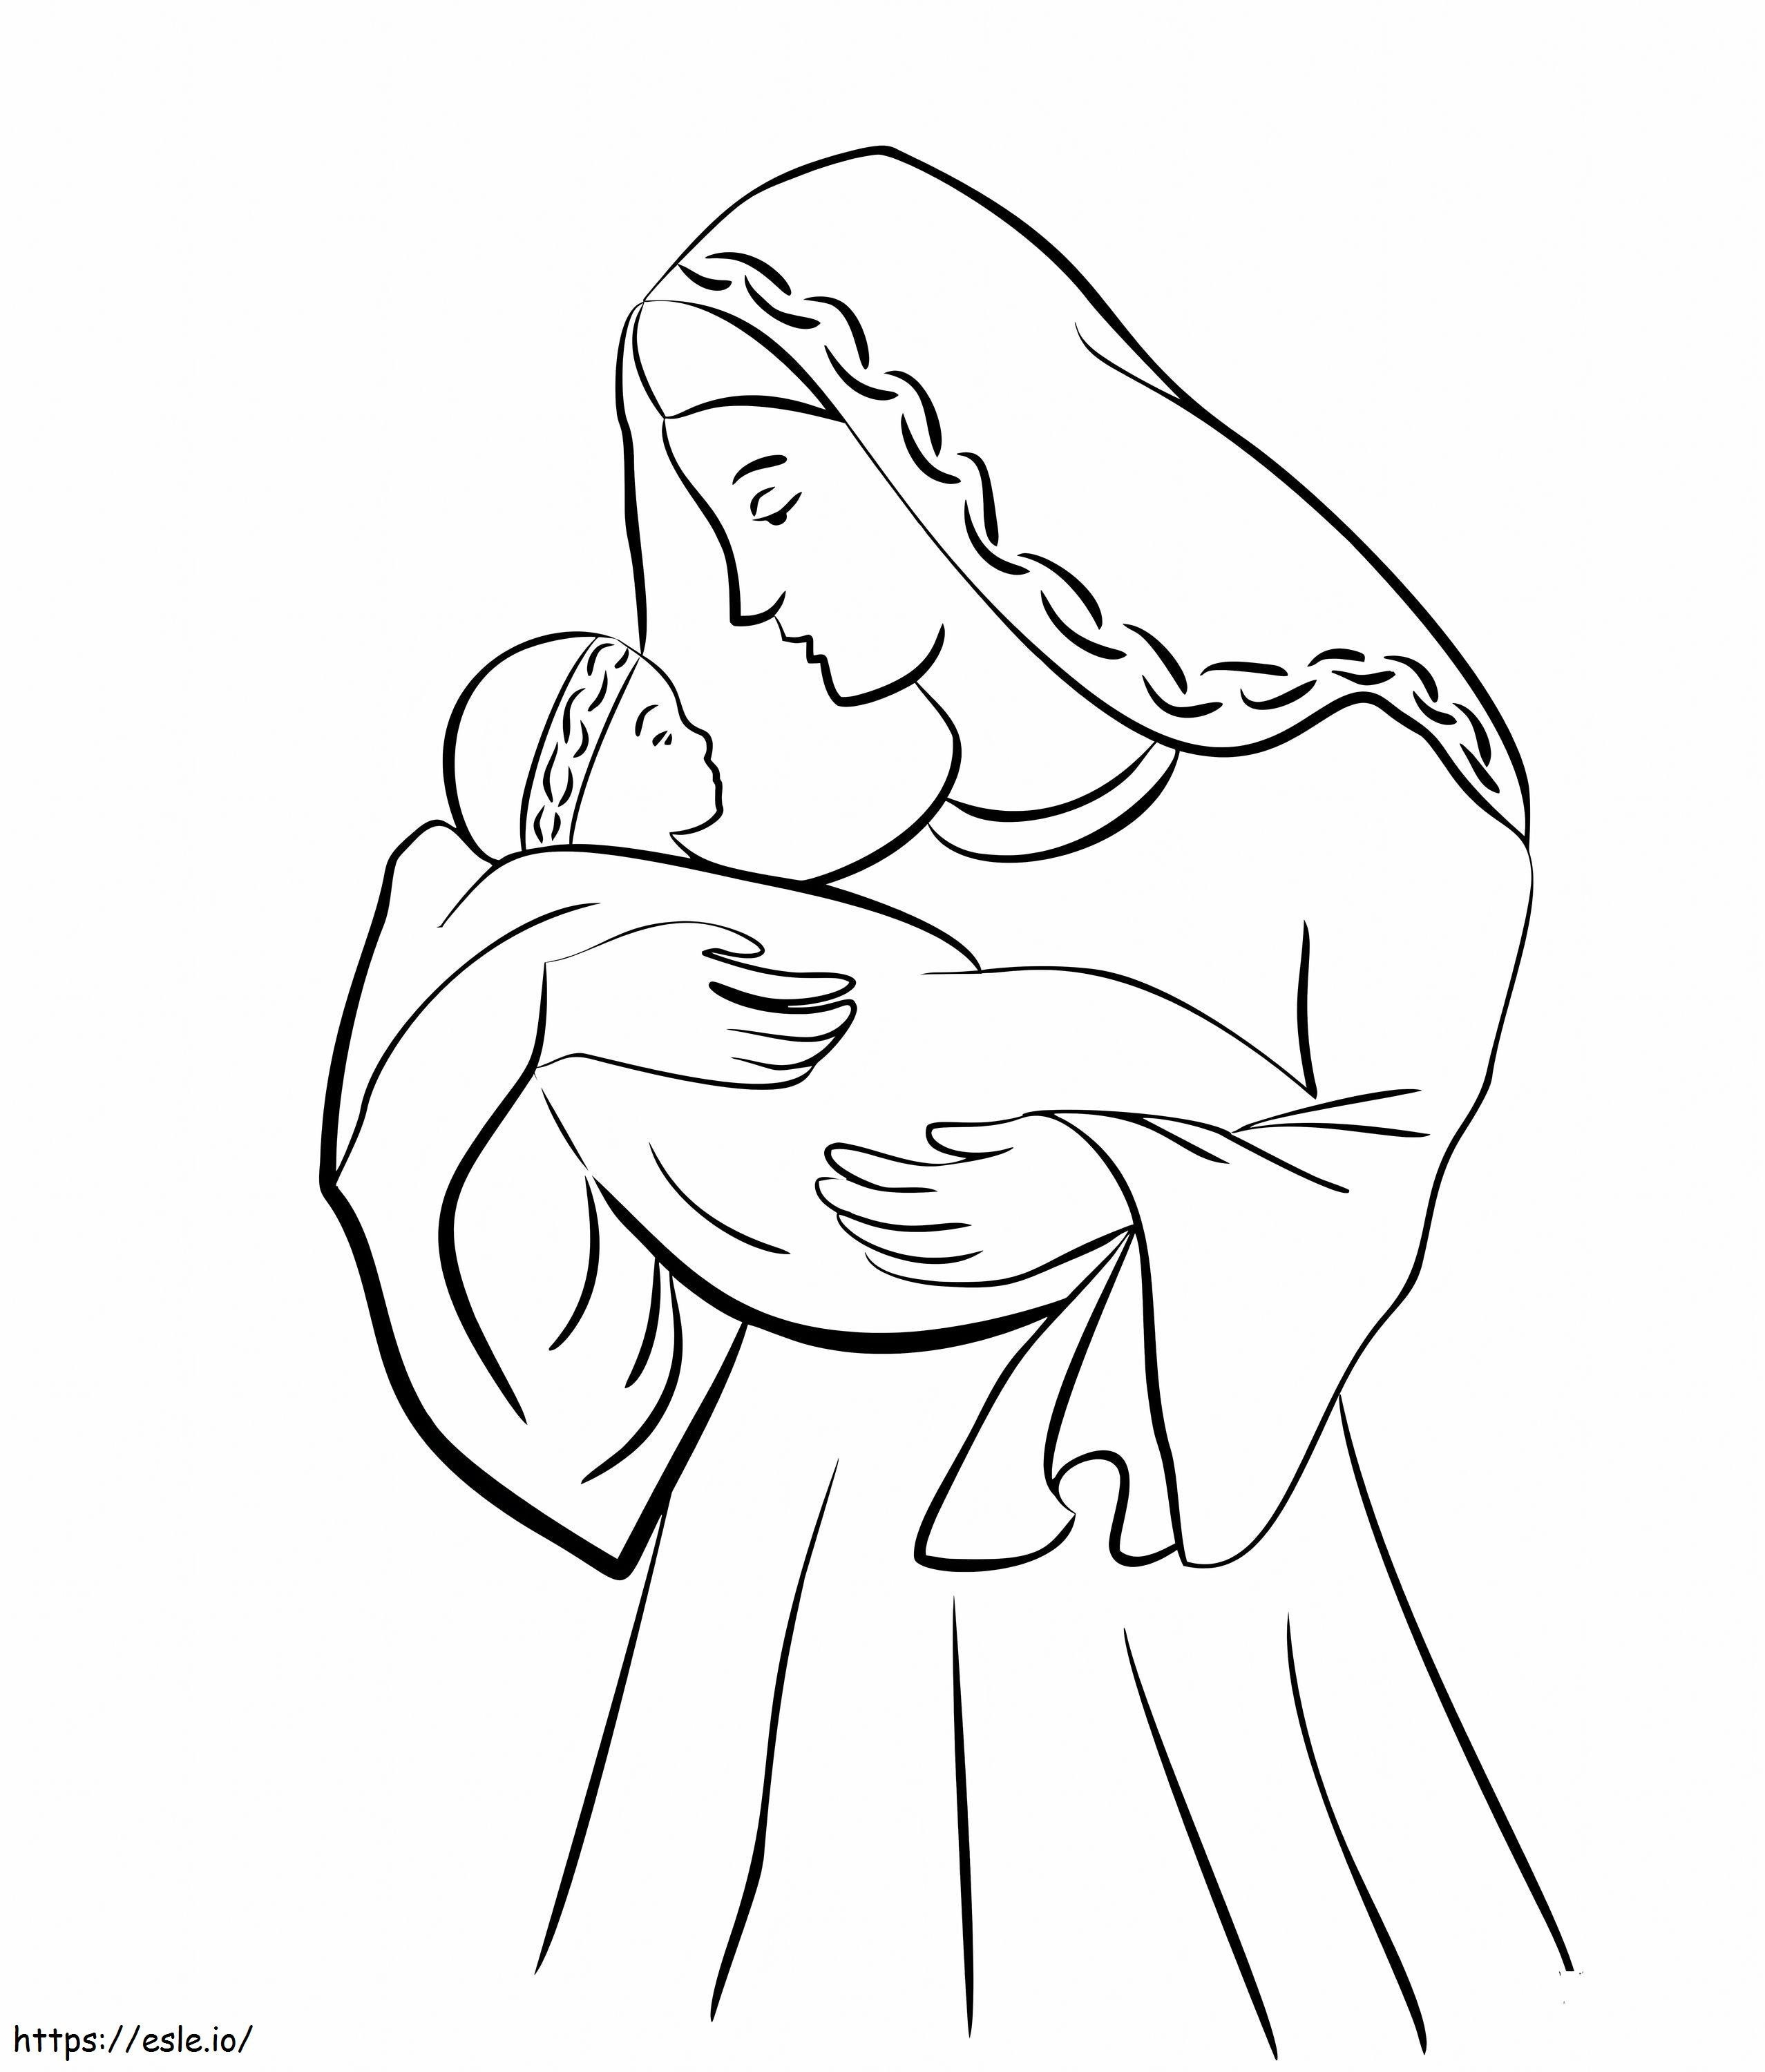 Wydrukuj obraz Matki Jezusa do pokolorowania kolorowanka